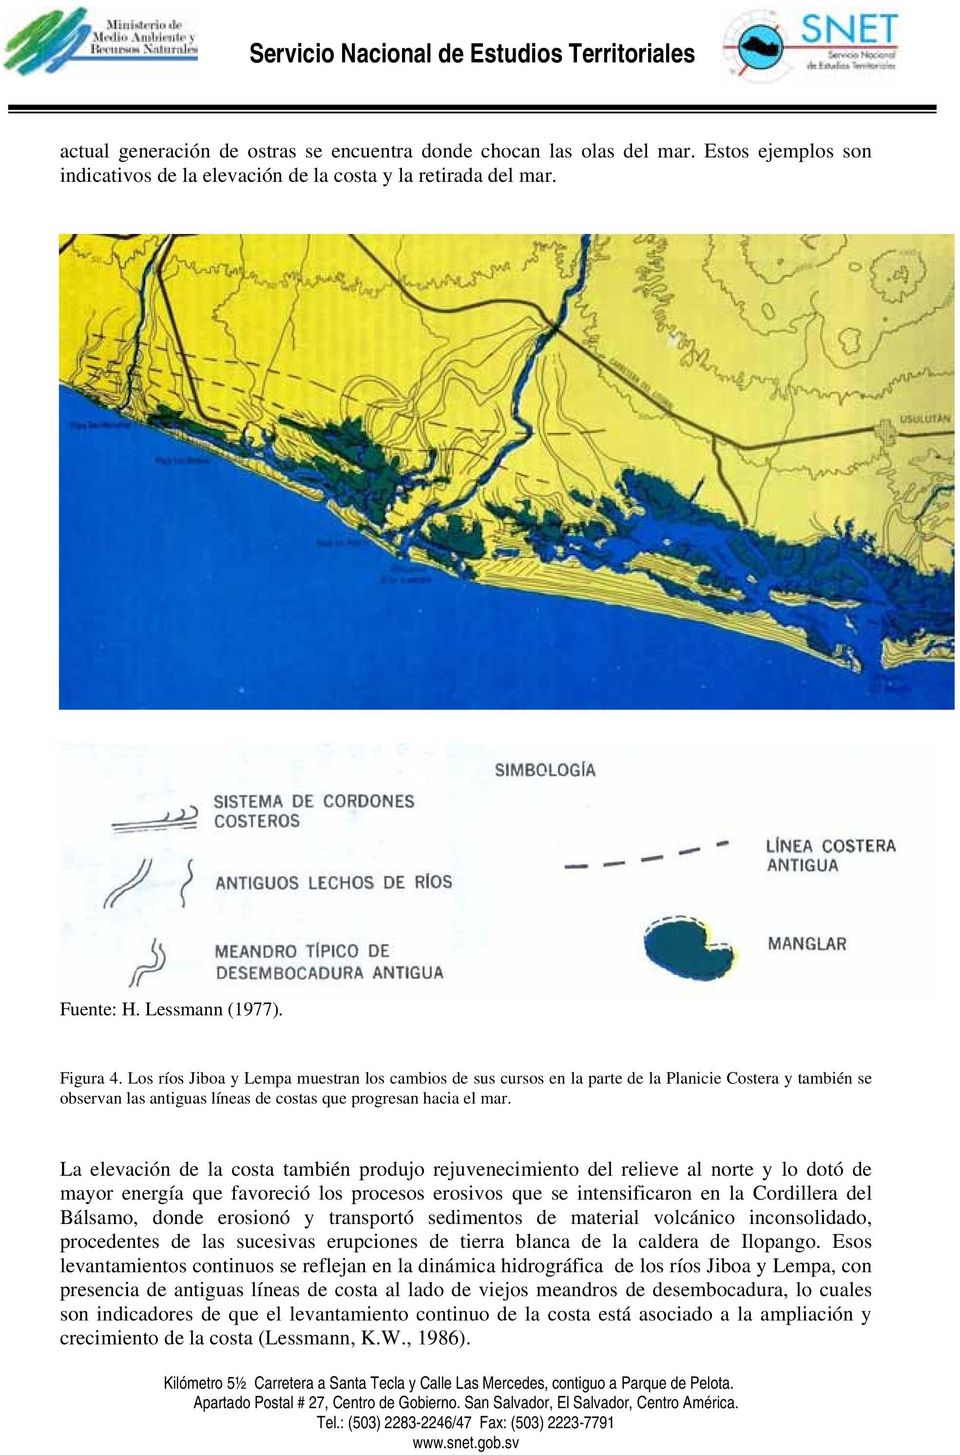 La elevación de la costa también produjo rejuvenecimiento del relieve al norte y lo dotó de mayor energía que favoreció los procesos erosivos que se intensificaron en la Cordillera del Bálsamo, donde